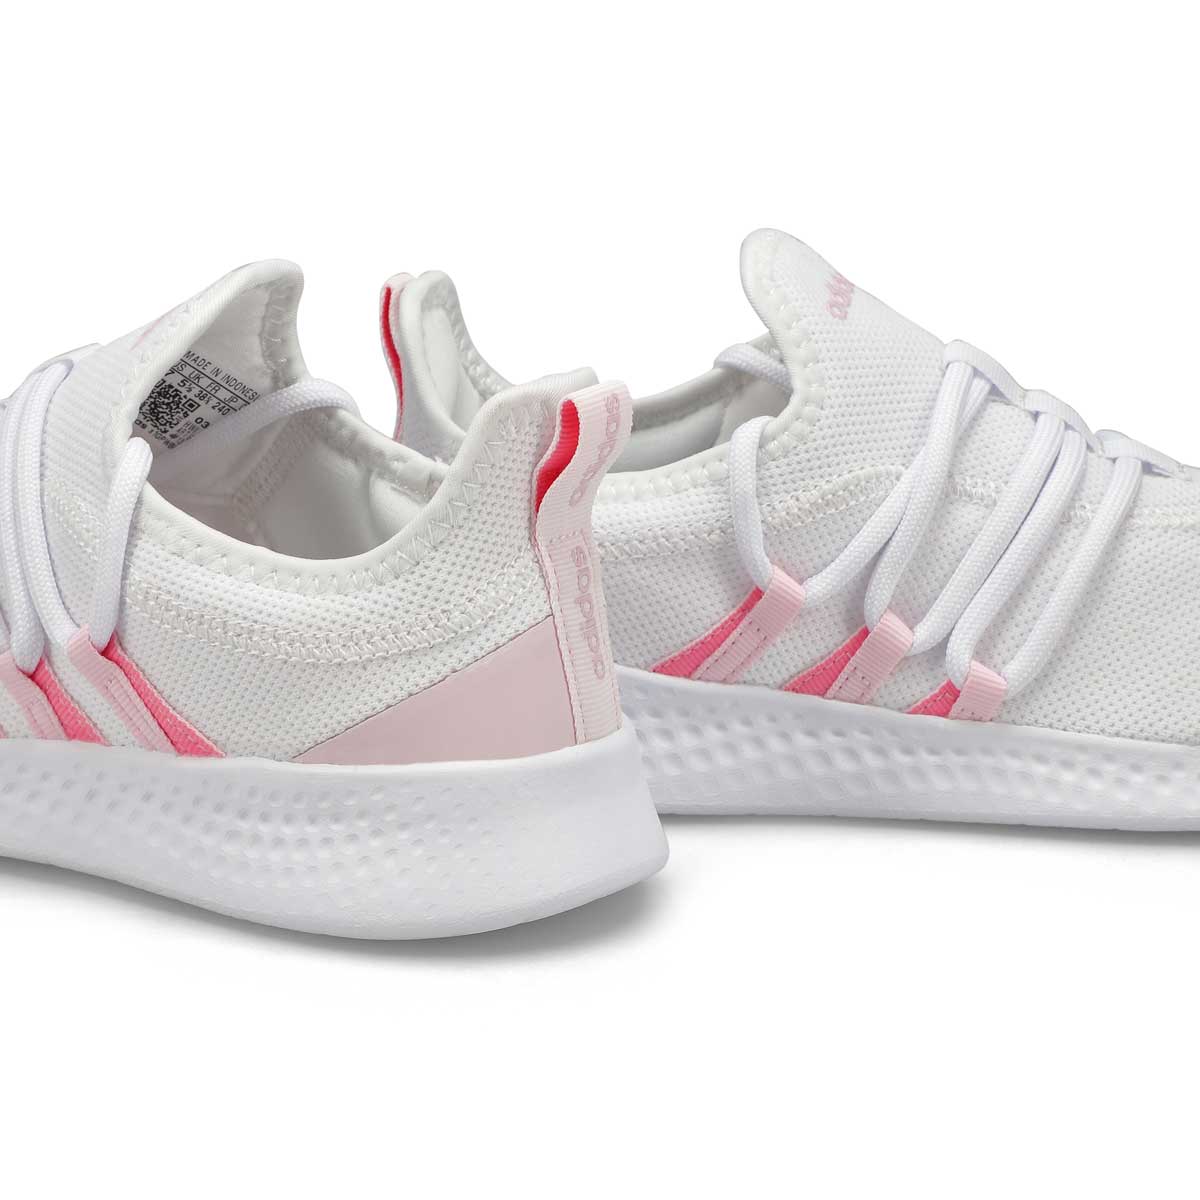 adidas Puremotion Adapt 2.0 Shoes - White | Women's Lifestyle | adidas US